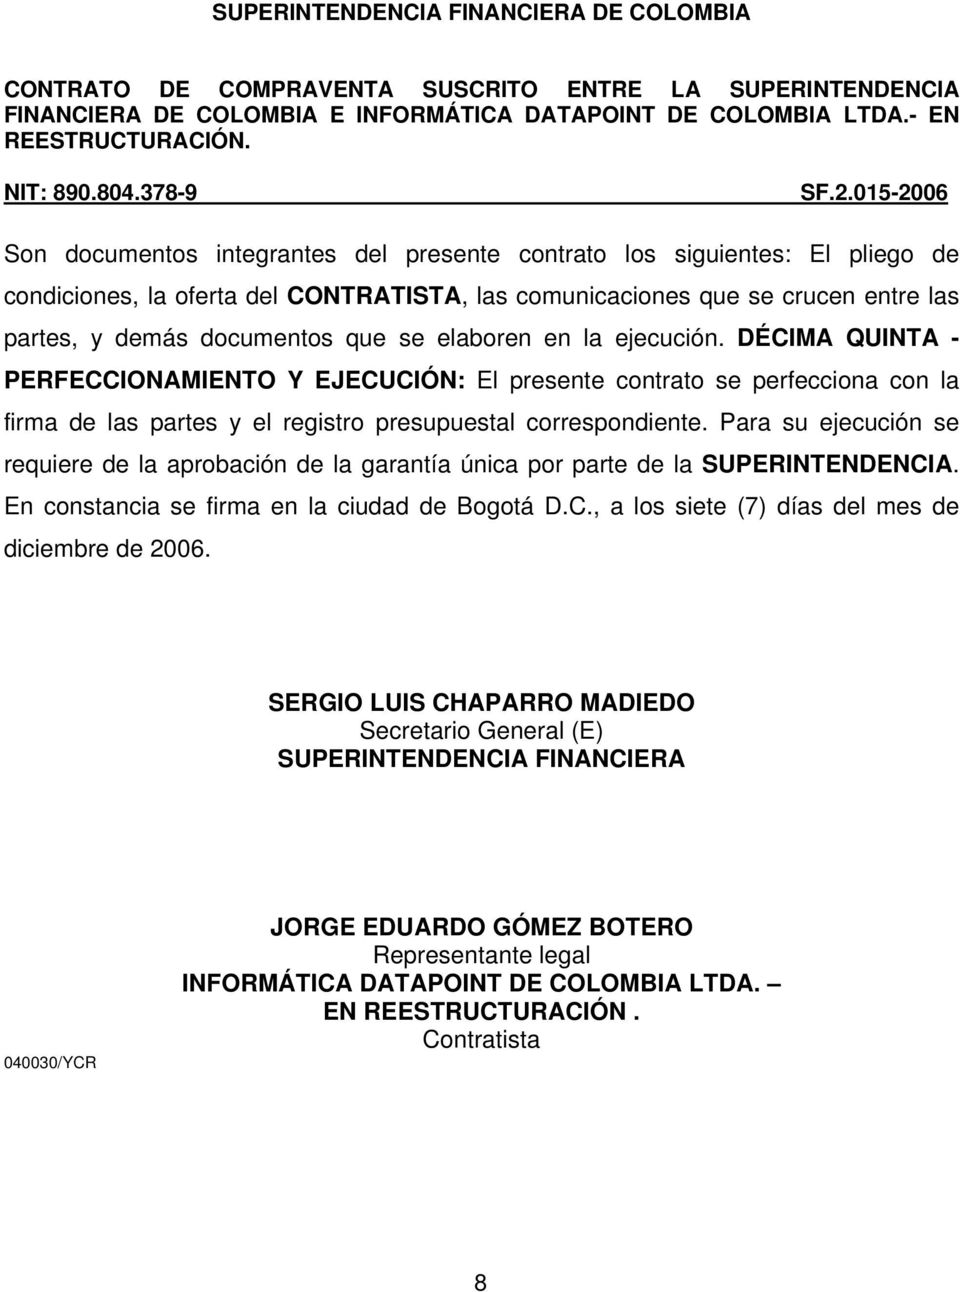 Para su ejecución se requiere de la aprobación de la garantía única por parte de la SUPERINTENDENCIA. En constancia se firma en la ciudad de Bogotá D.C., a los siete (7) días del mes de diciembre de 2006.